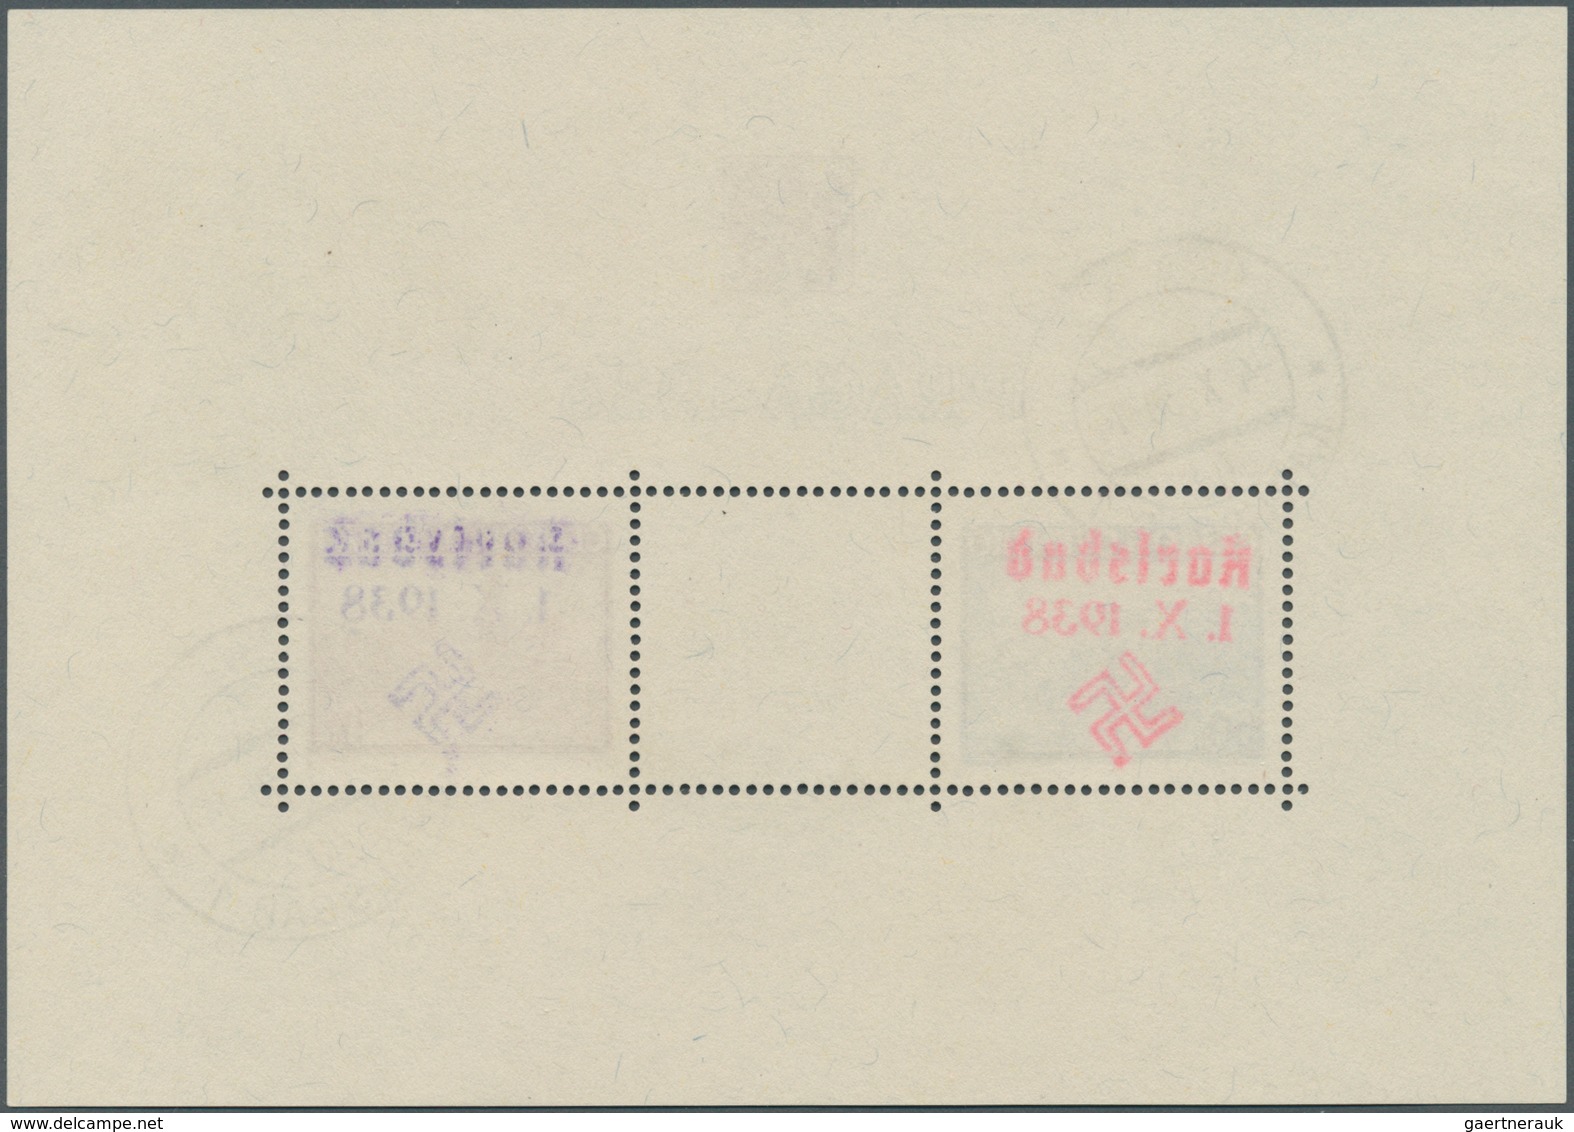 Sudetenland - Karlsbad: Blockausgabe "Briefmarkenausstellung PRAGA 1938", Mit Handstempelaufdruck "K - Région Des Sudètes